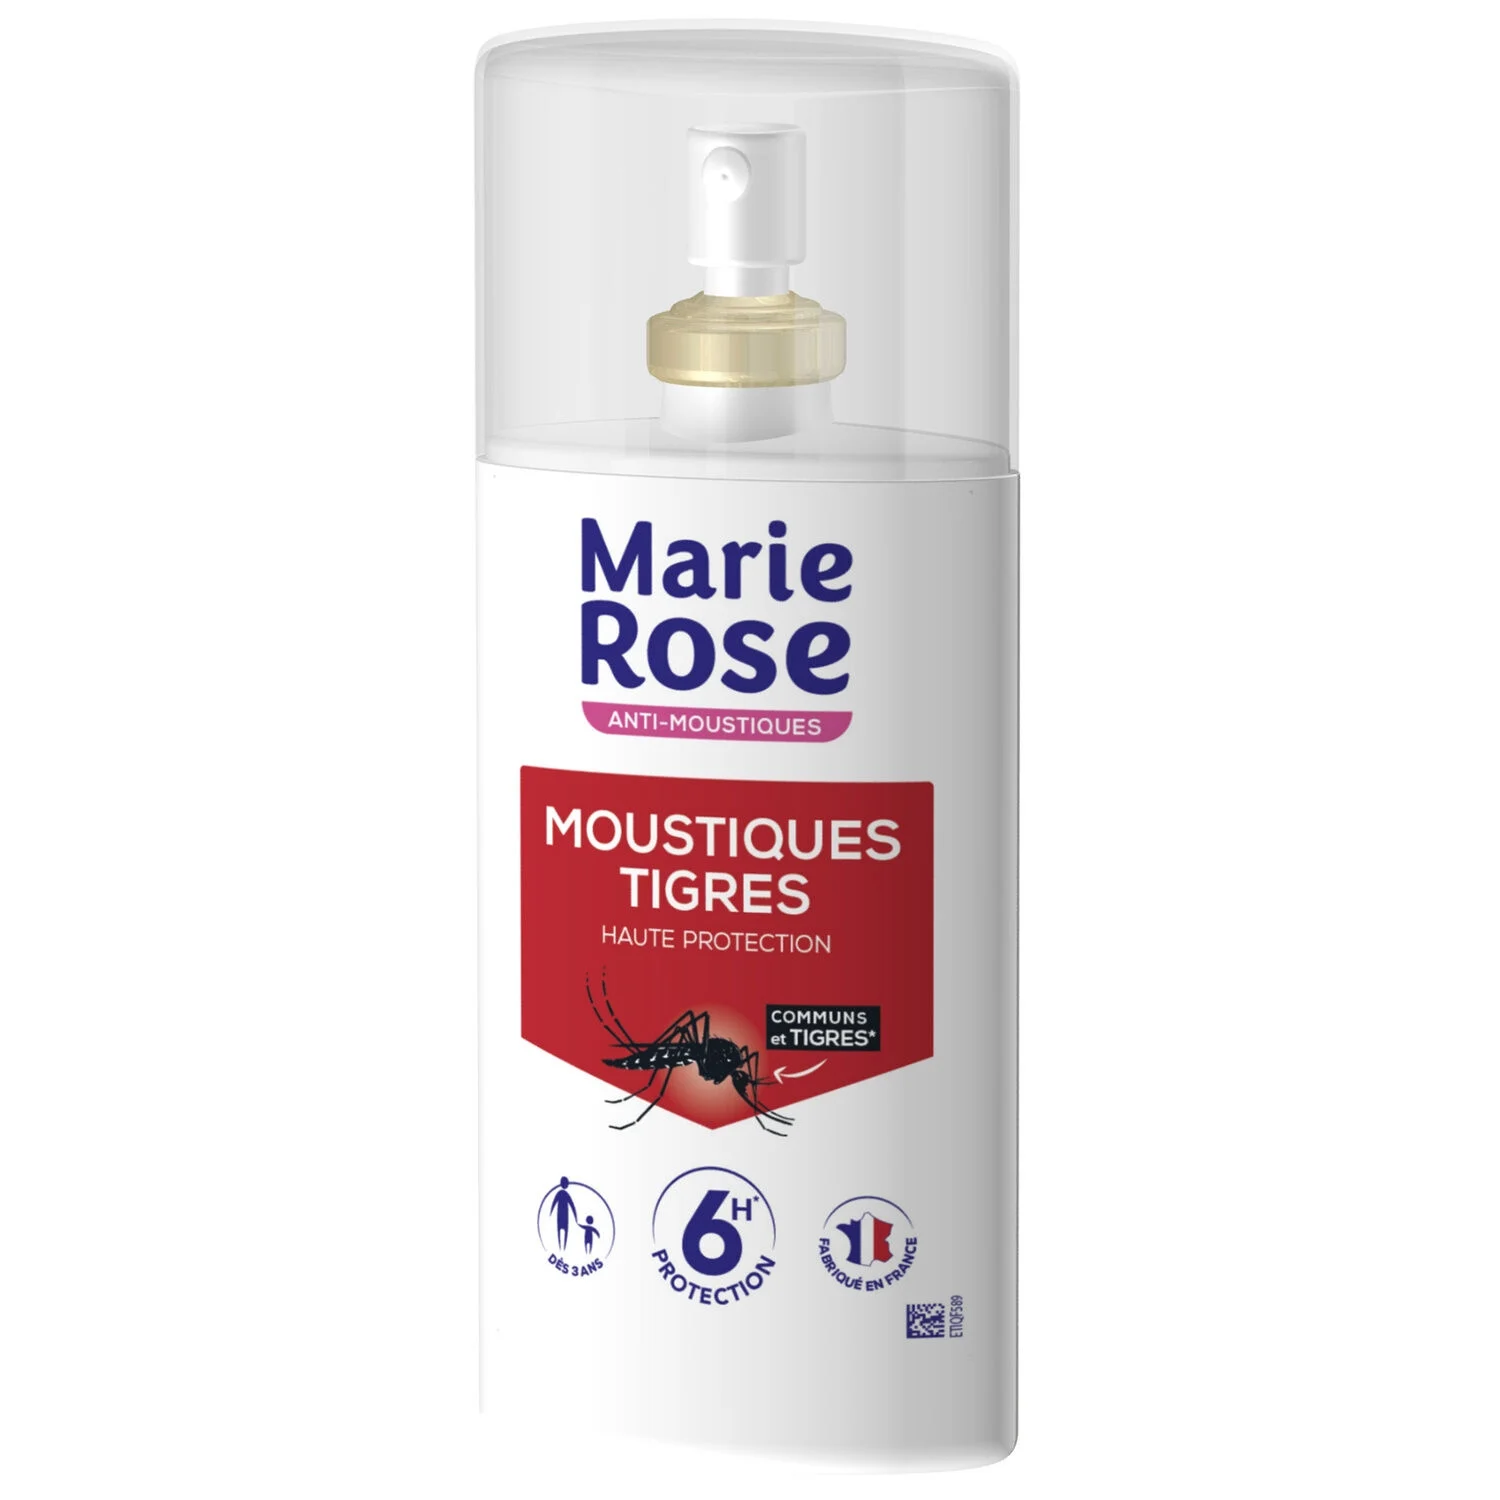 Anti-moustiques Répulsif Protection 7 H 100ml -marie Rose